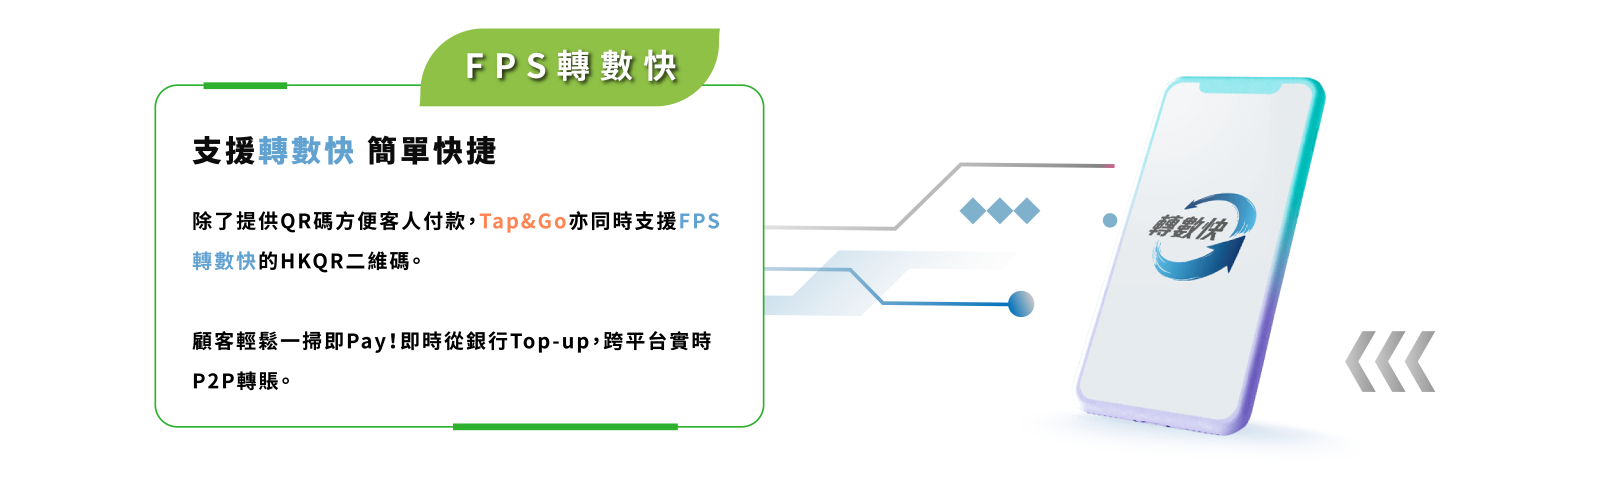 支援轉數快 簡單快捷      除了提供QR碼方便客人付款，Tap&Go亦同時支援FPS轉數快的HKQR二維碼。  顧客輕鬆一掃即Pay！即時從銀行Top-up，跨平台實時P2P轉賬。